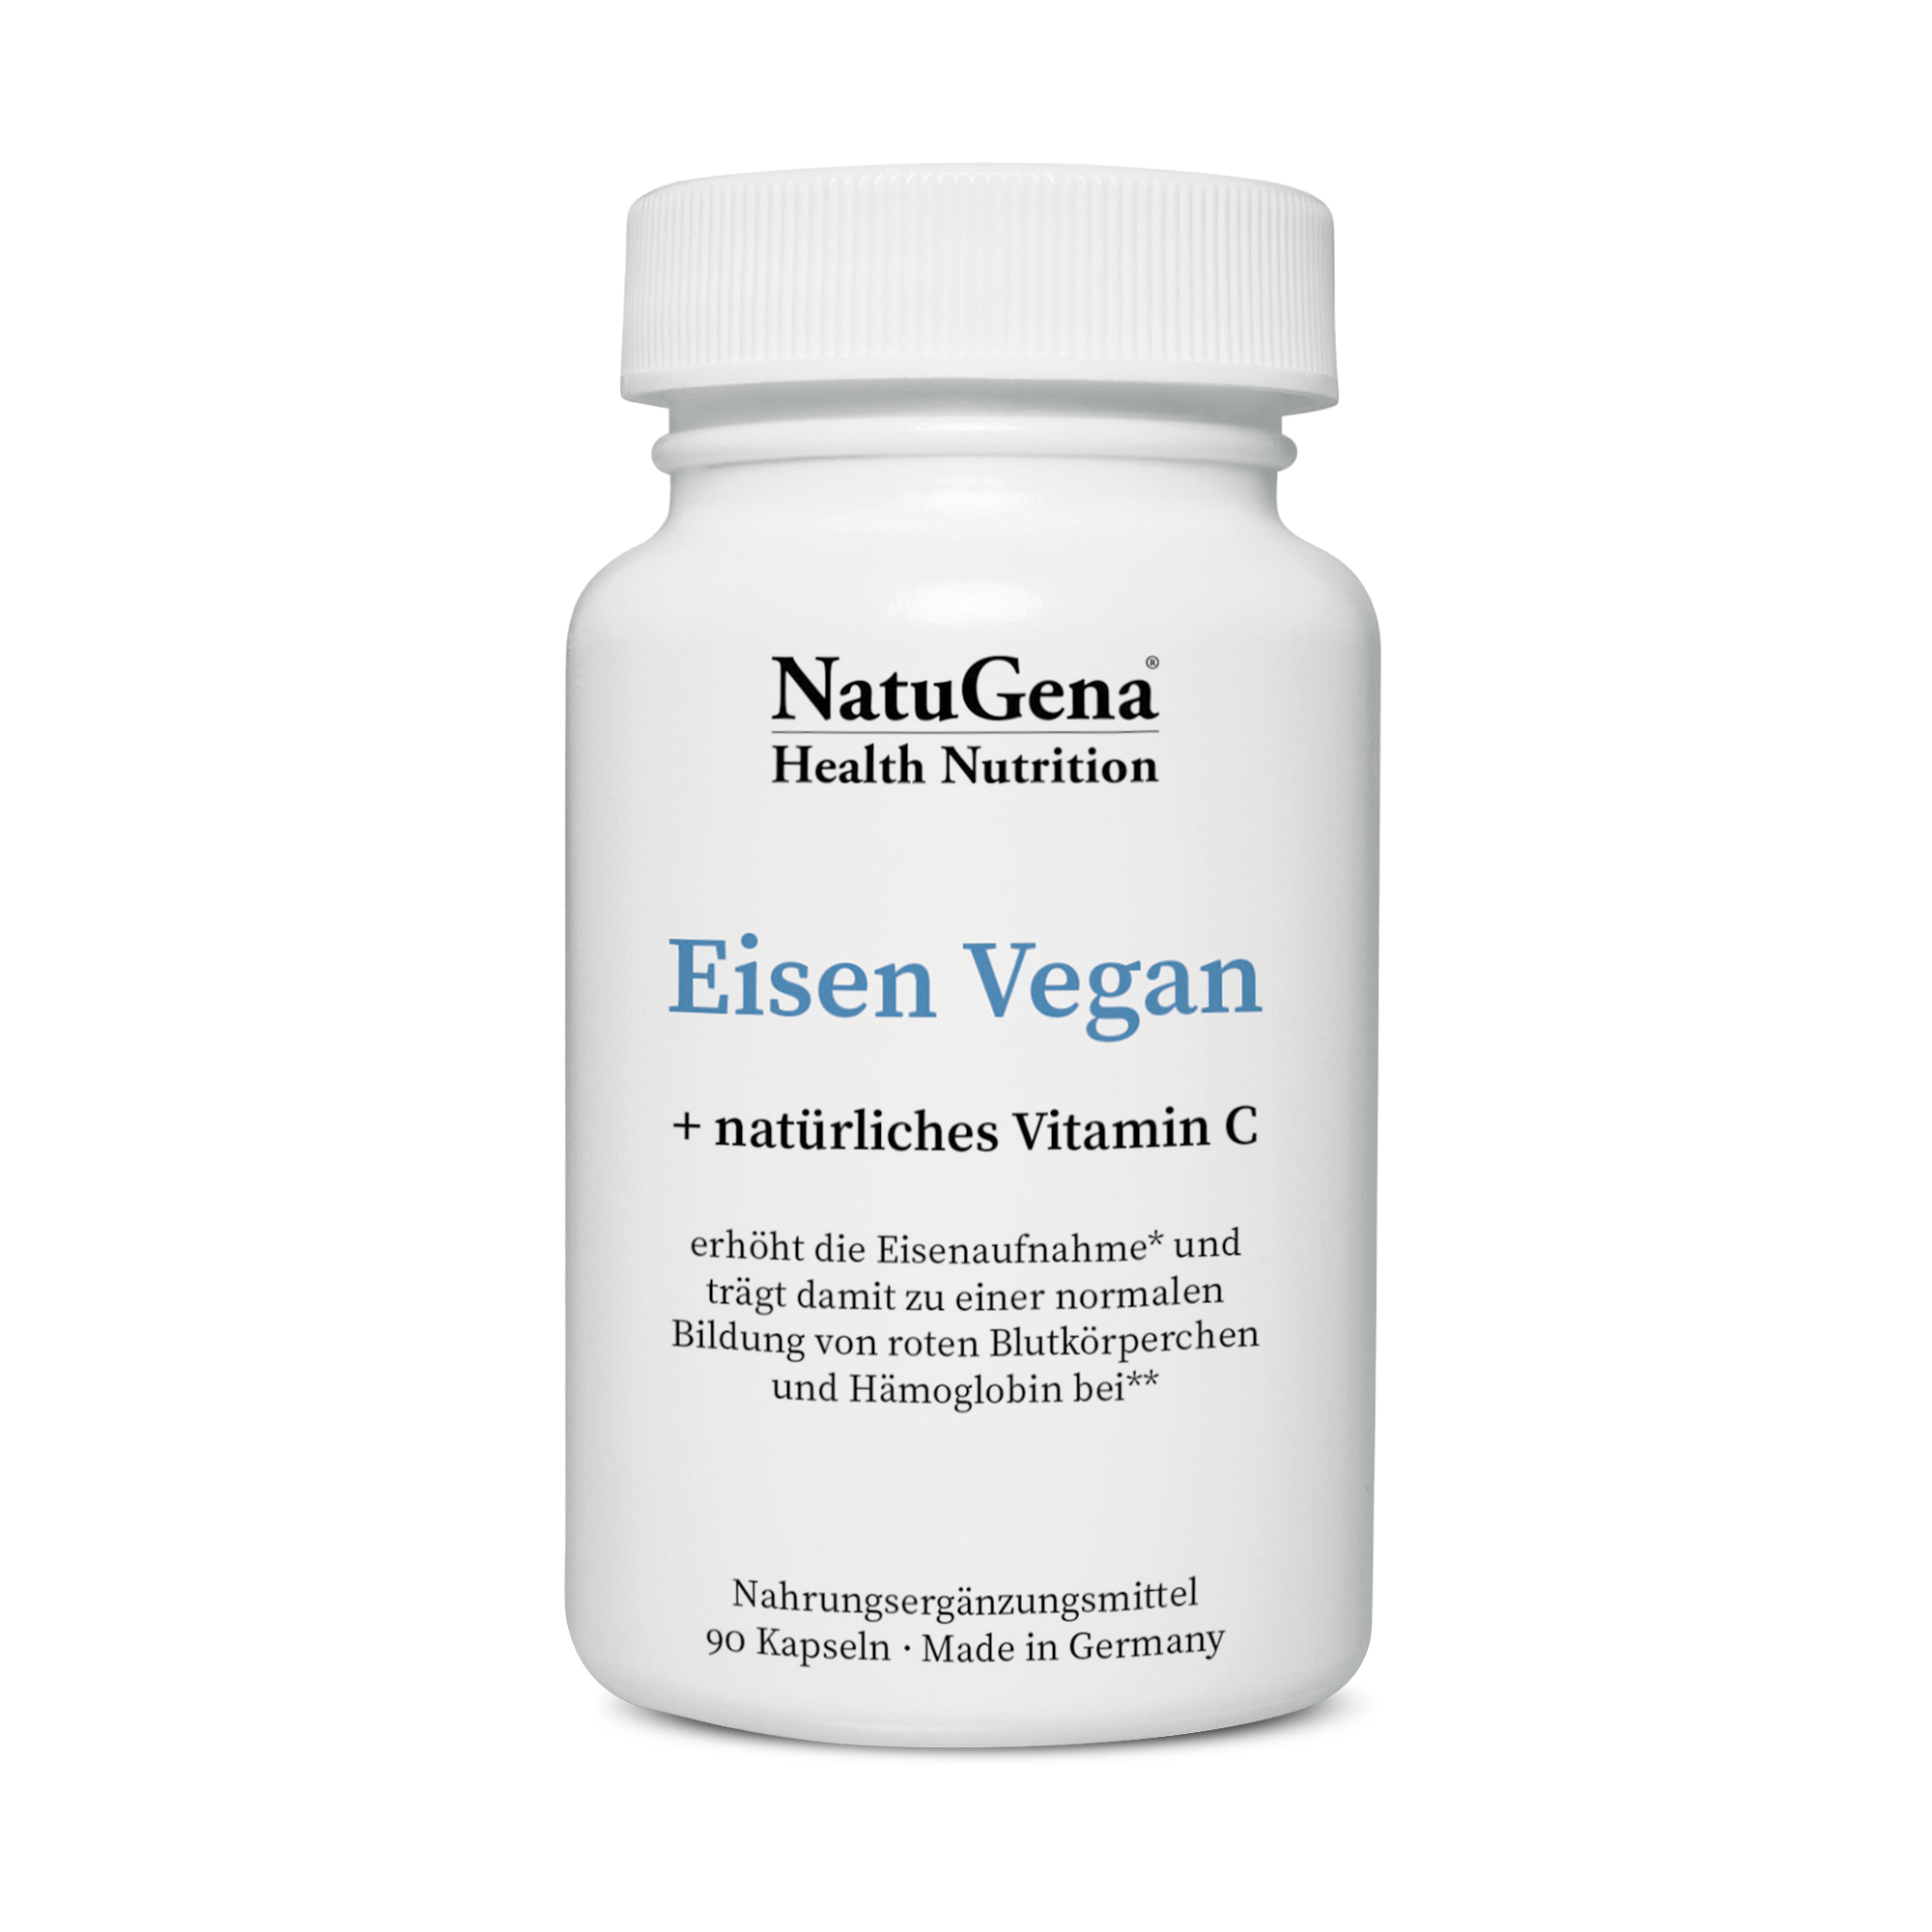 NatuGena Eisen Vegan | 90 Kapseln | mit natürlichem Vitamin C | gluten- und laktosefrei